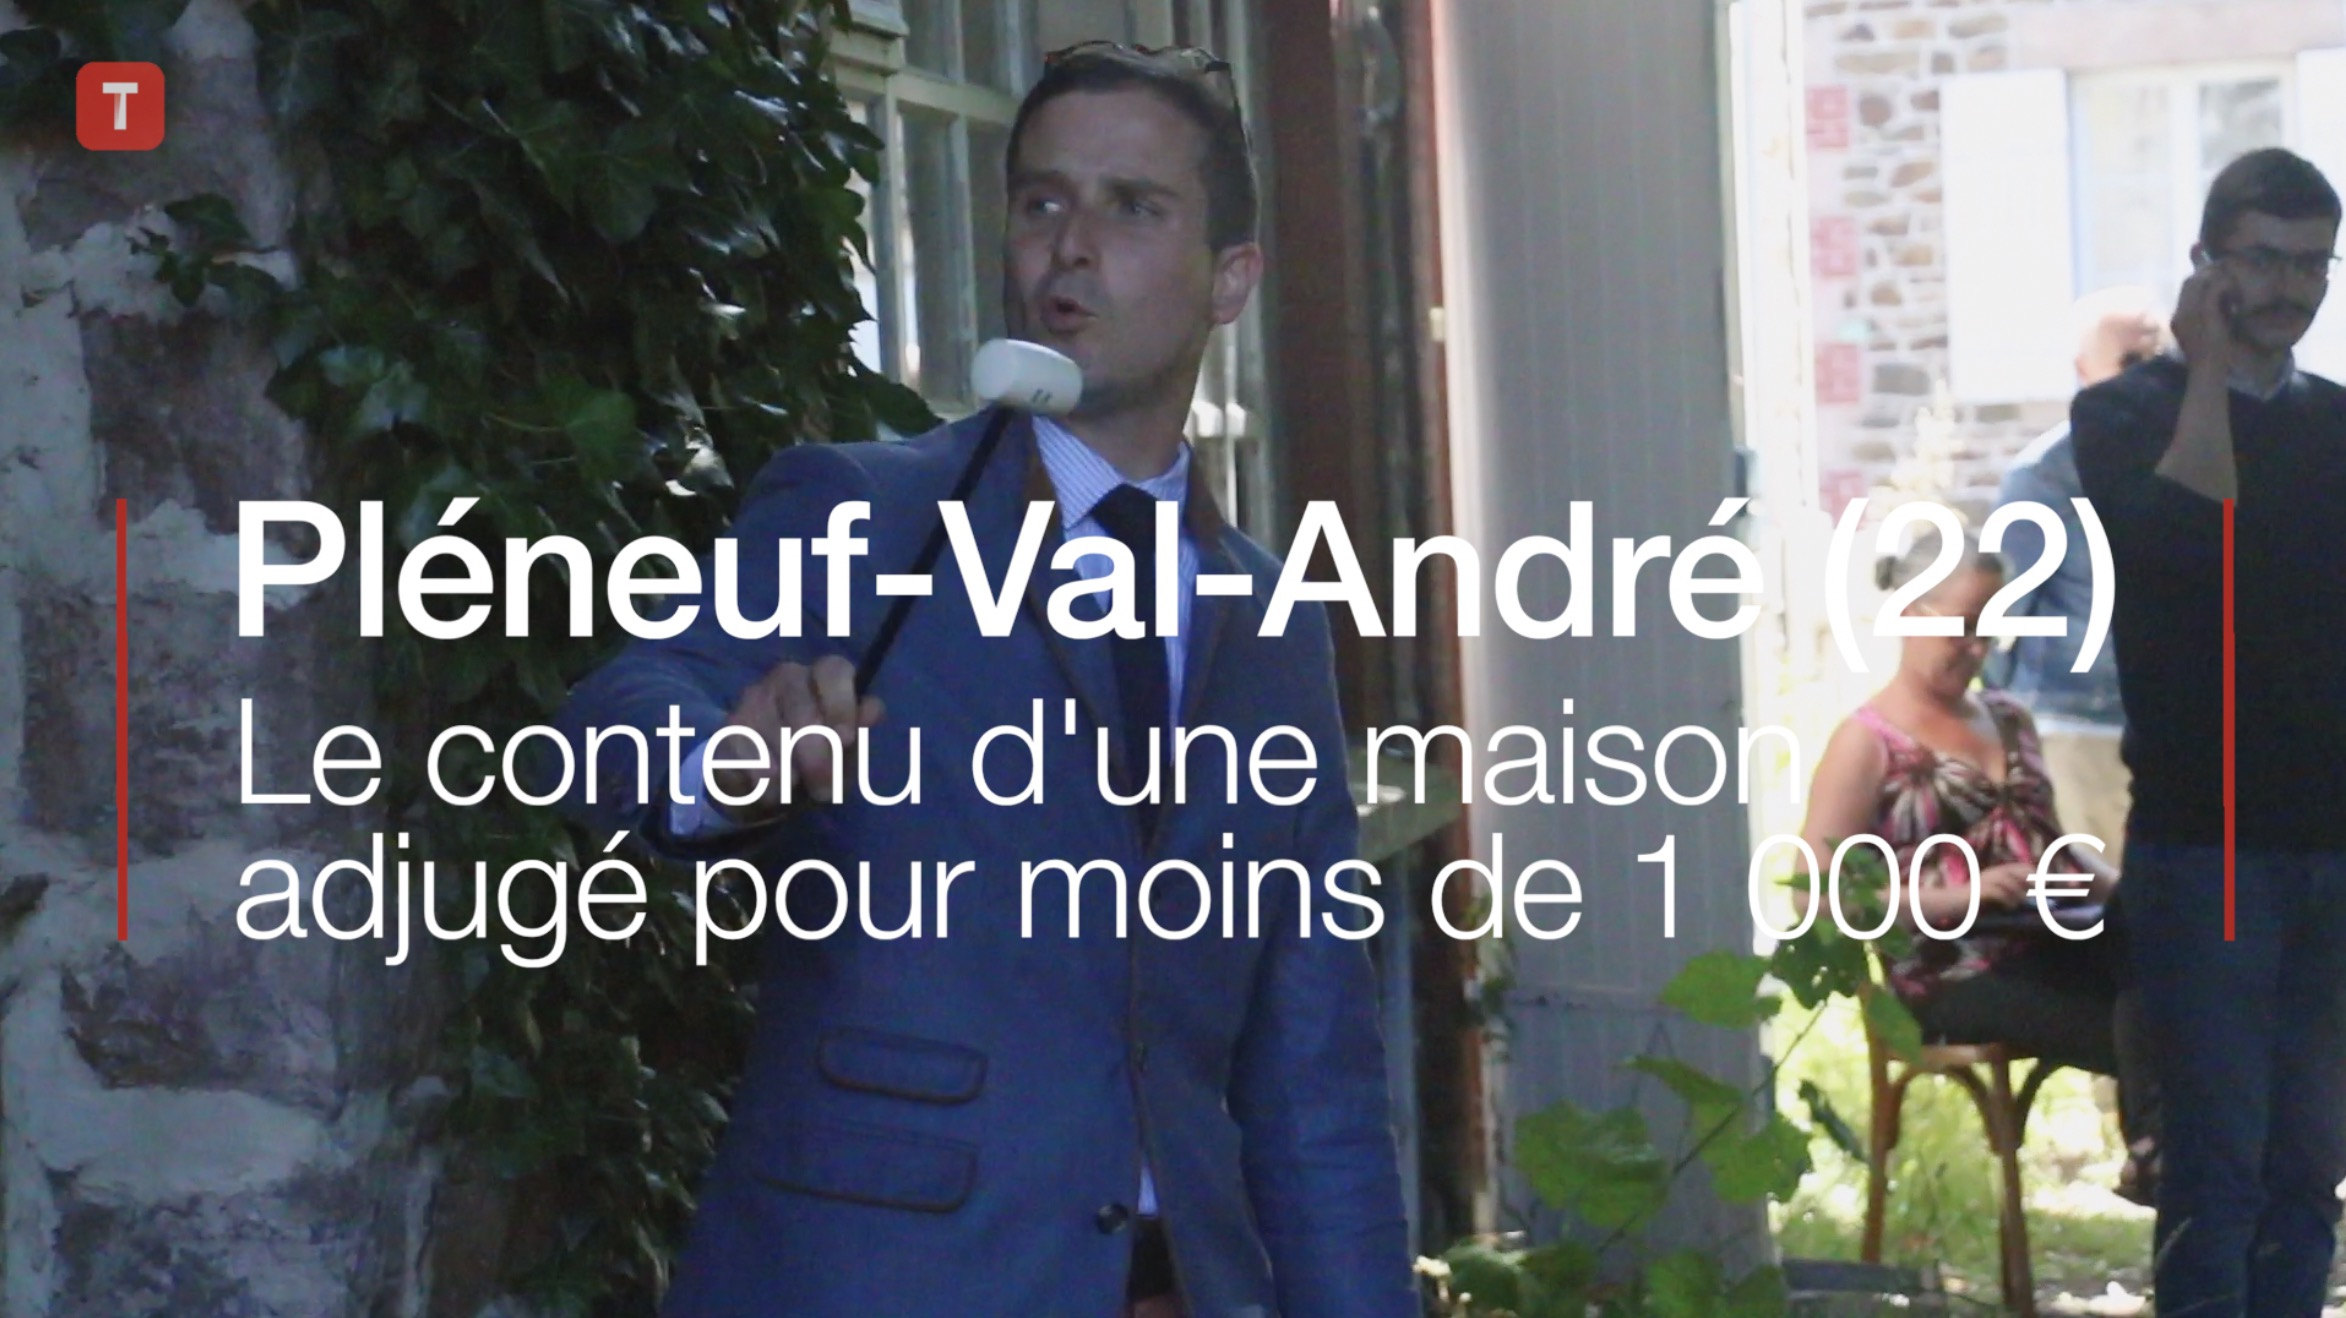 Pléneuf-Val-André (22). Le contenu d'une maison adjugé pour moins de 1 000 € (Le Télégramme)